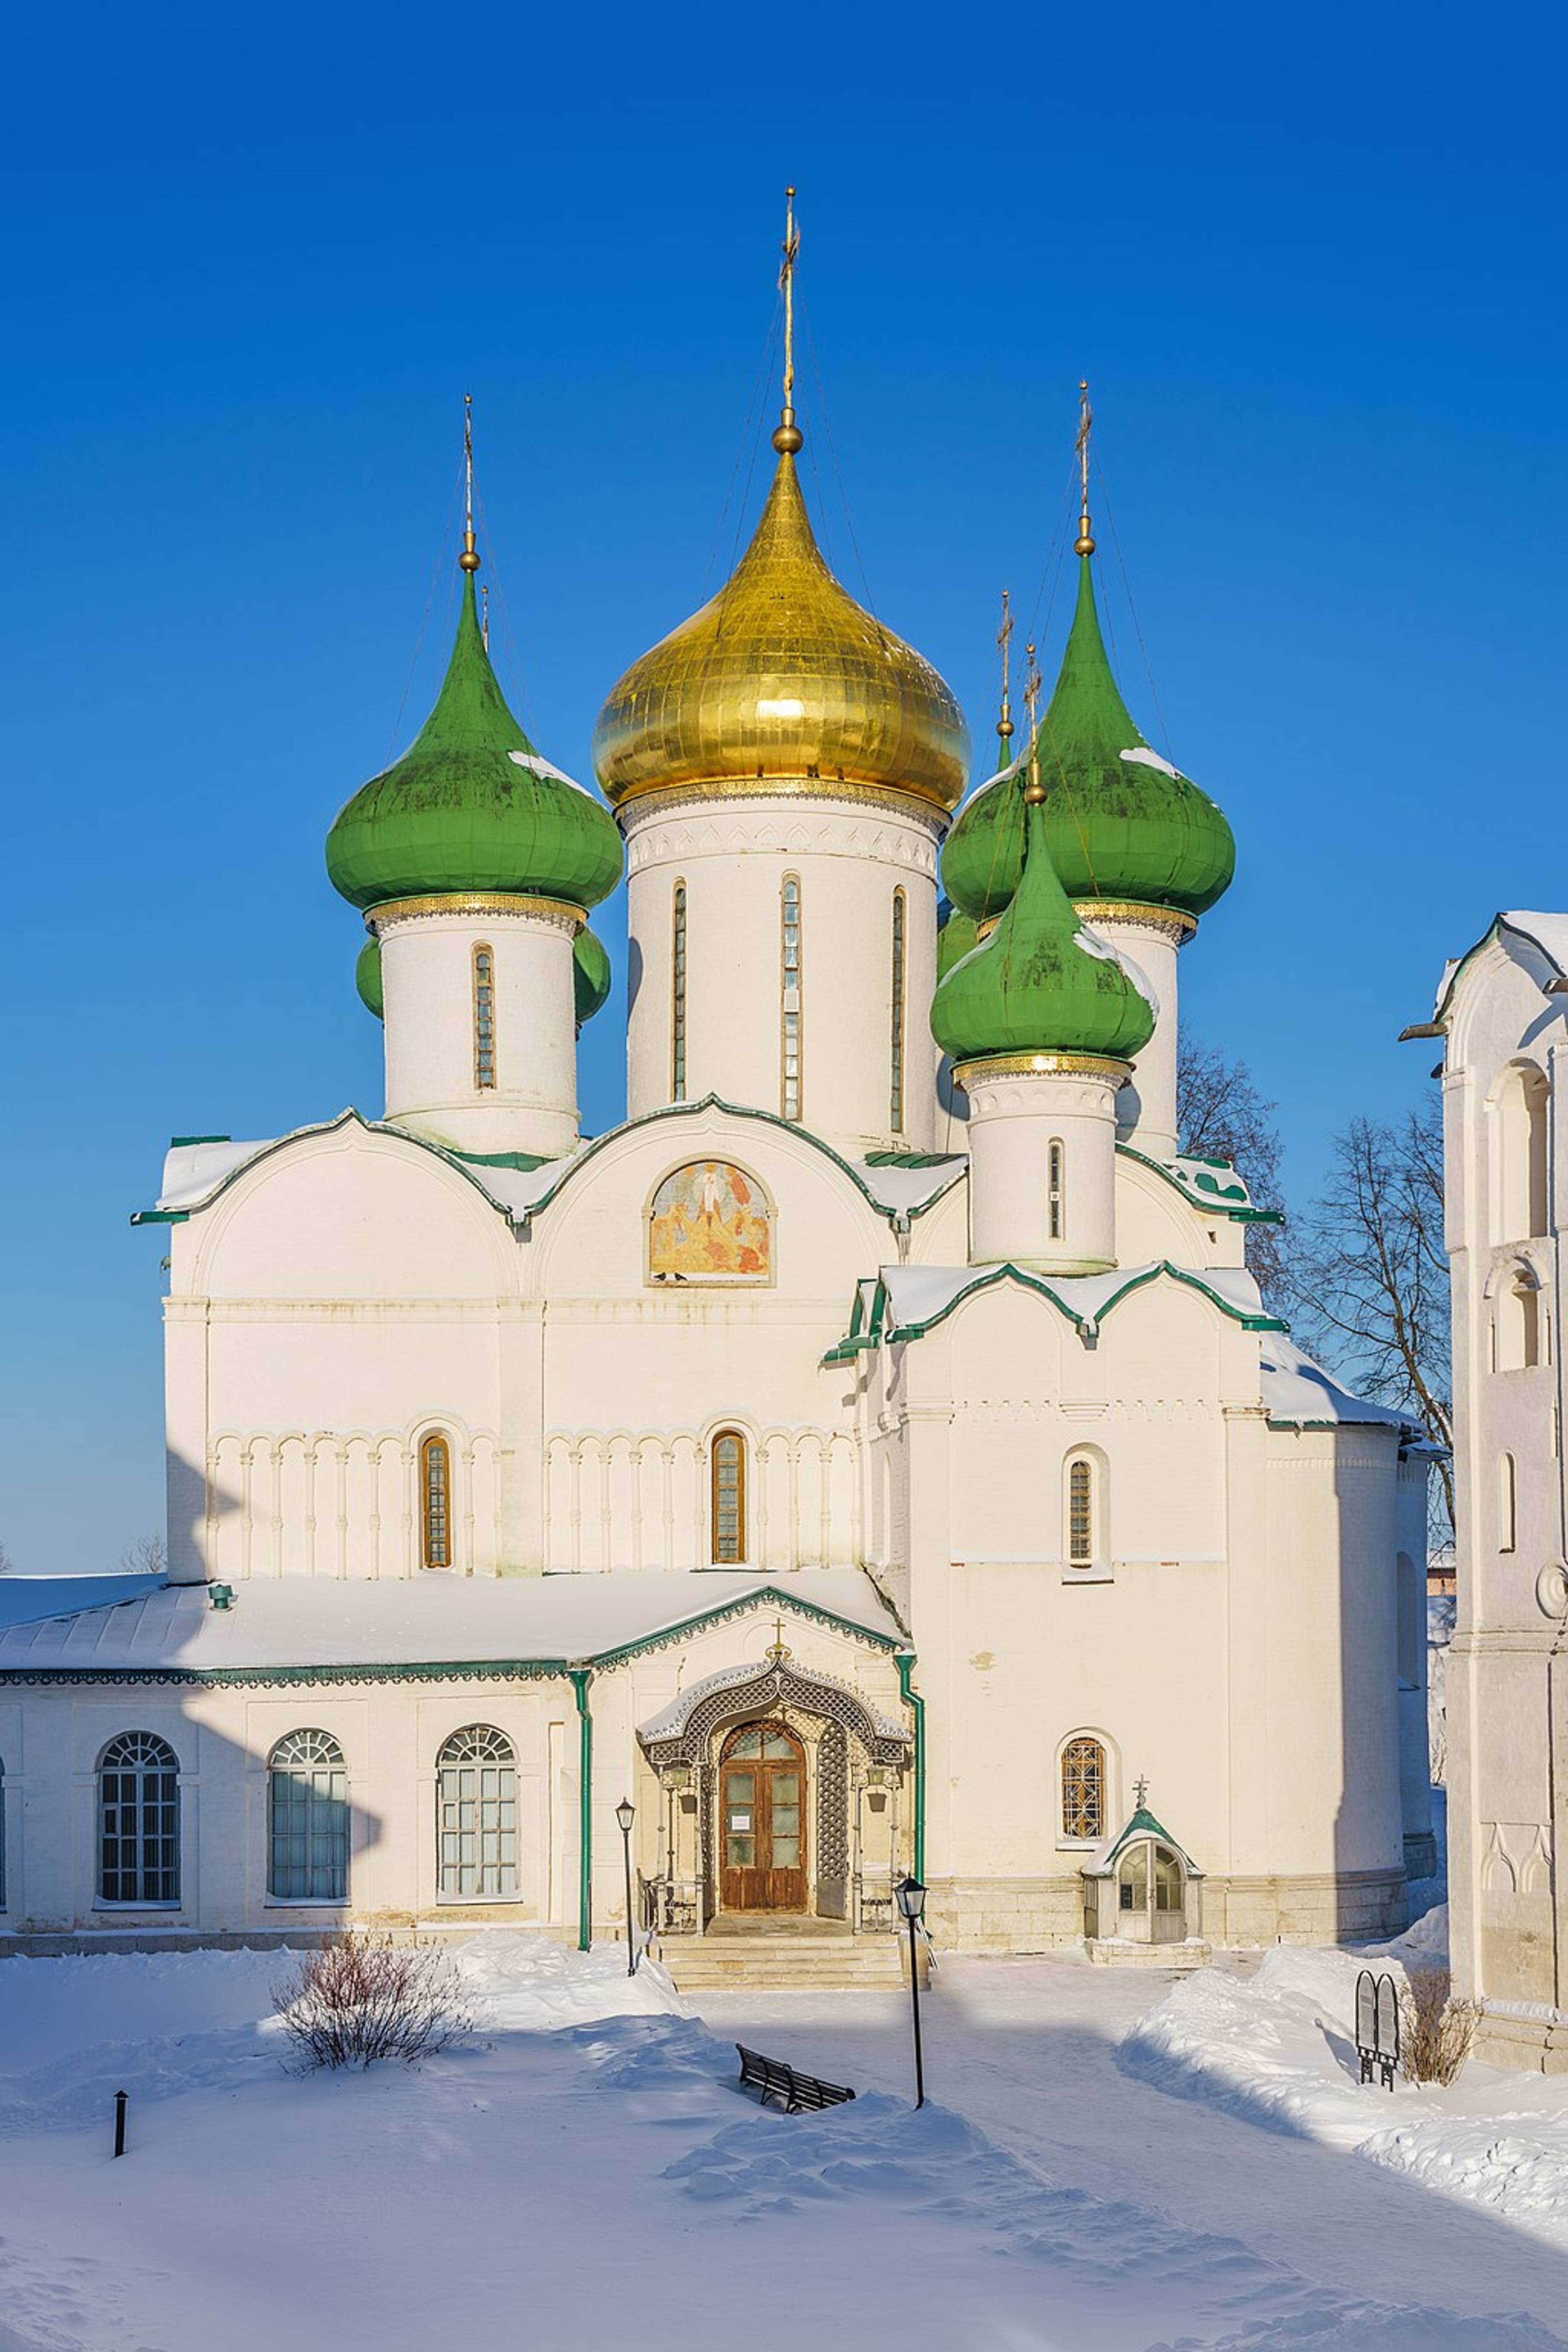 Spaso-Efimiev Monastery